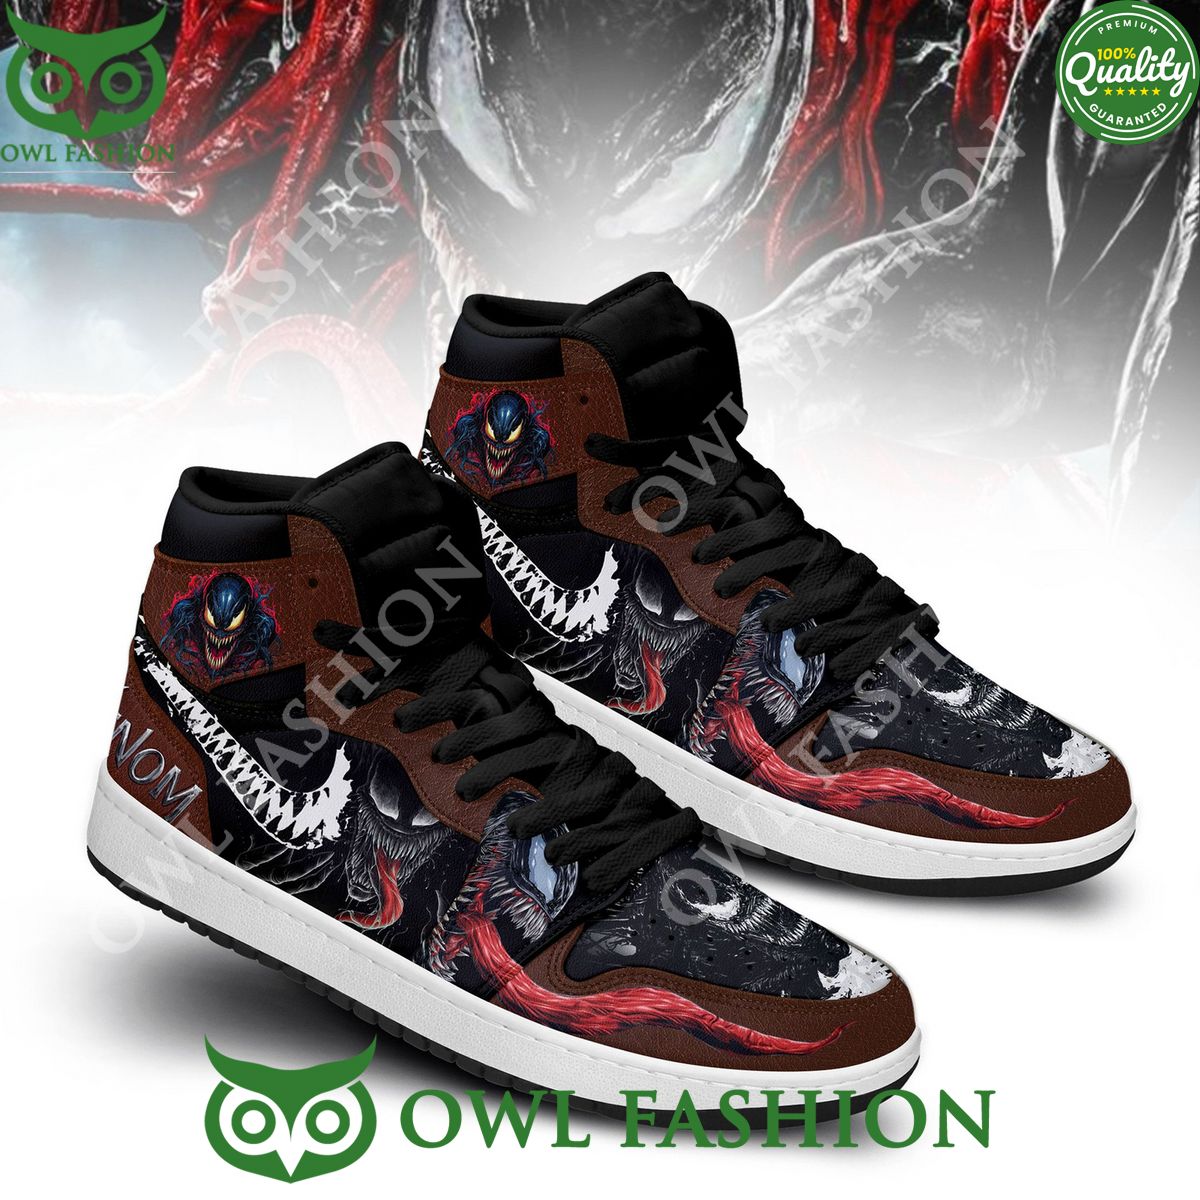 Venom Scary Red tongue Air Jordan High Top Sneakers